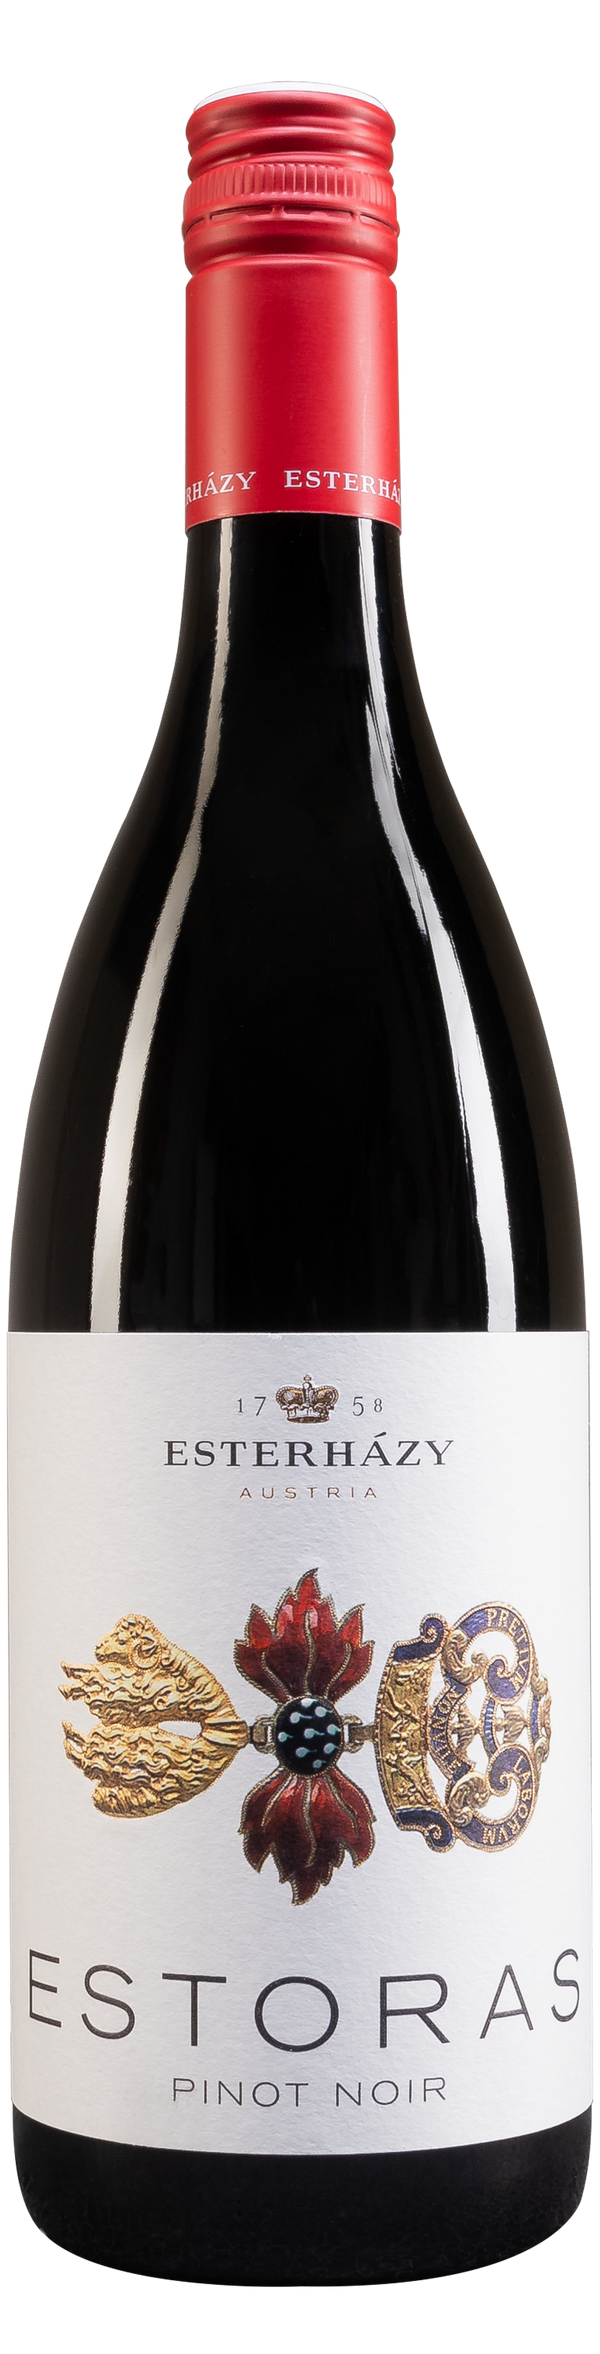 Esterházy Pinot Noir Estoras 2020 0,75l